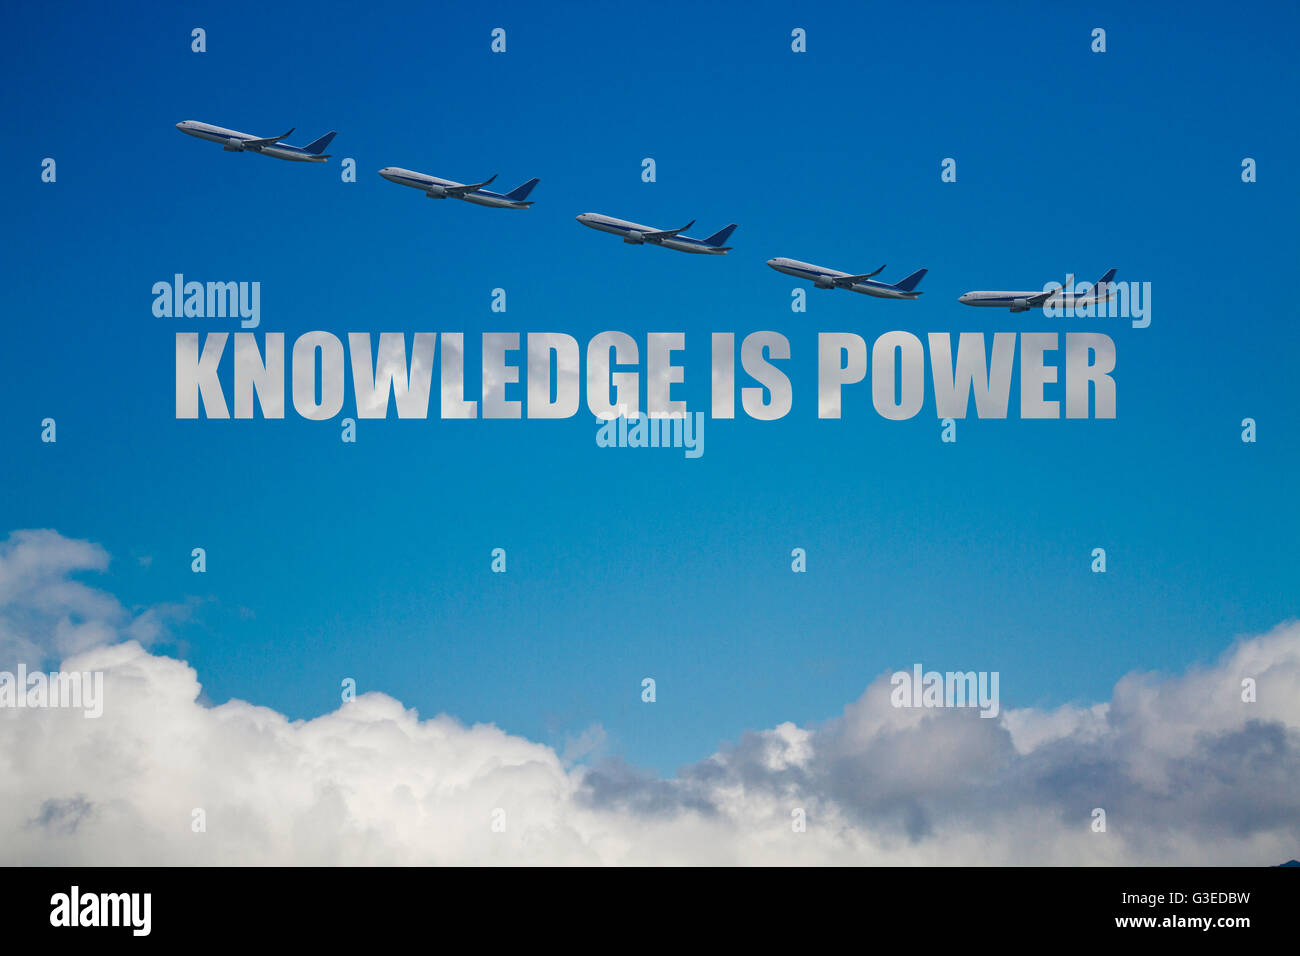 La connaissance est puissance concept contre nuages bleus ciel avec cinq avions Banque D'Images